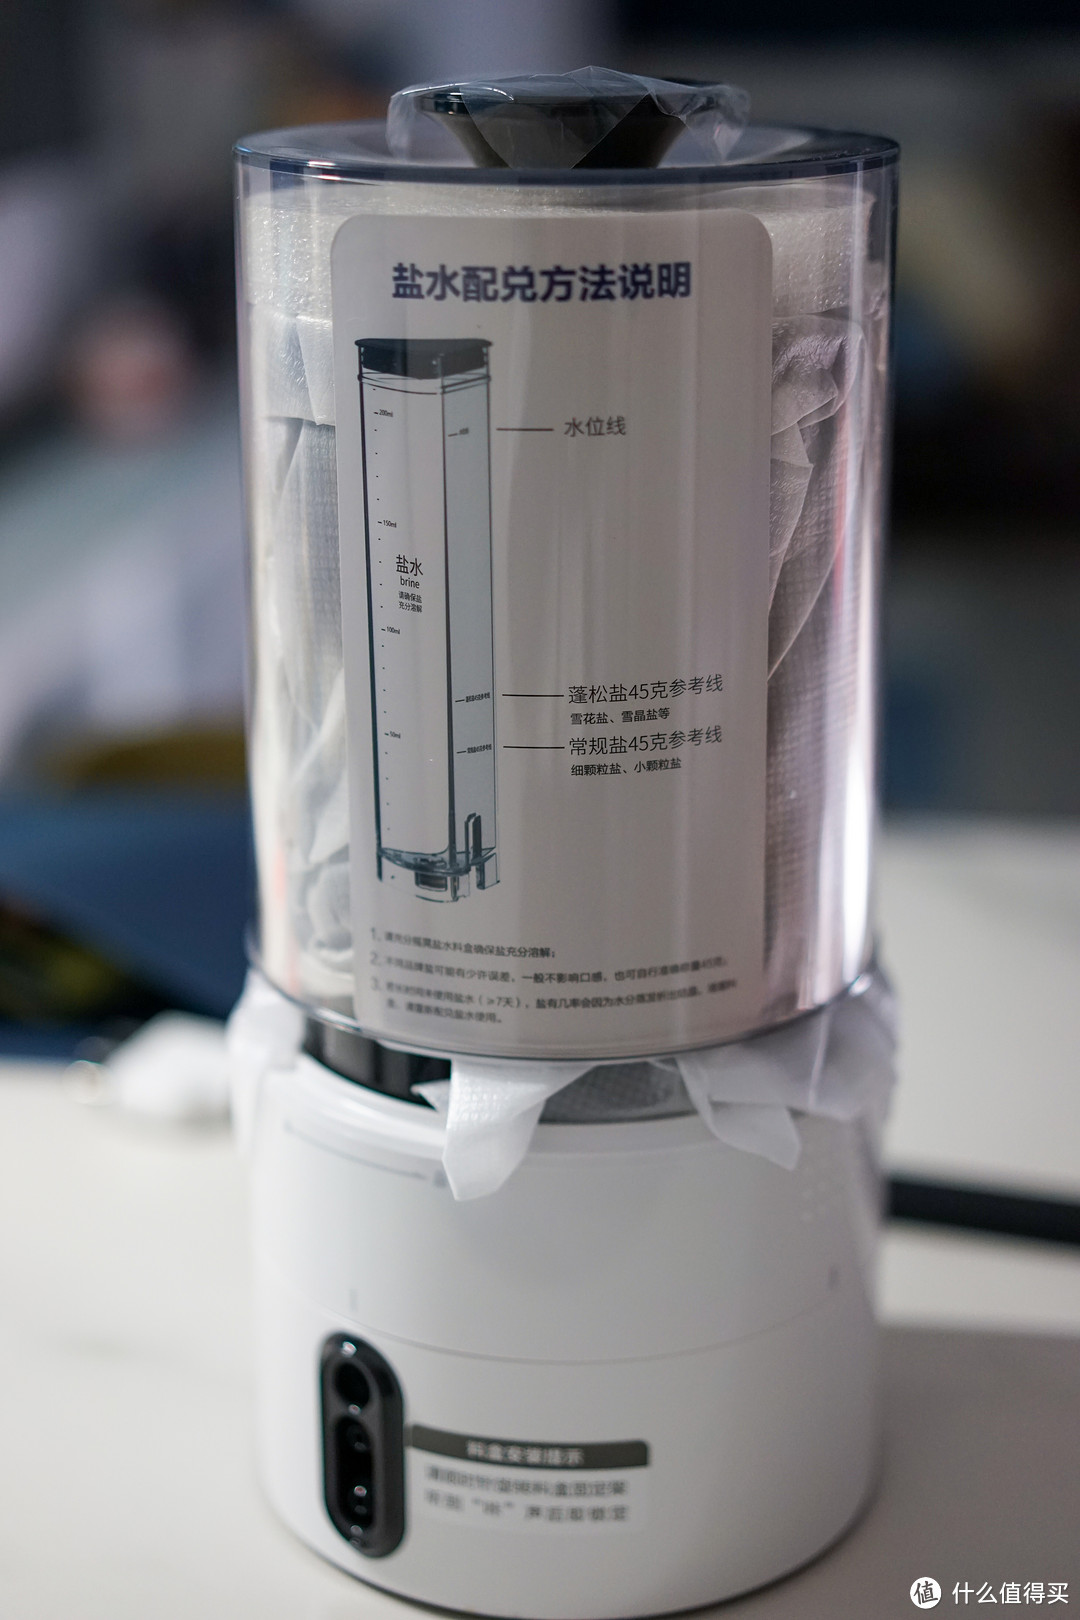 调料盒附赠的说明写着盐水的调配方法，调料盒背后是输料管的插孔